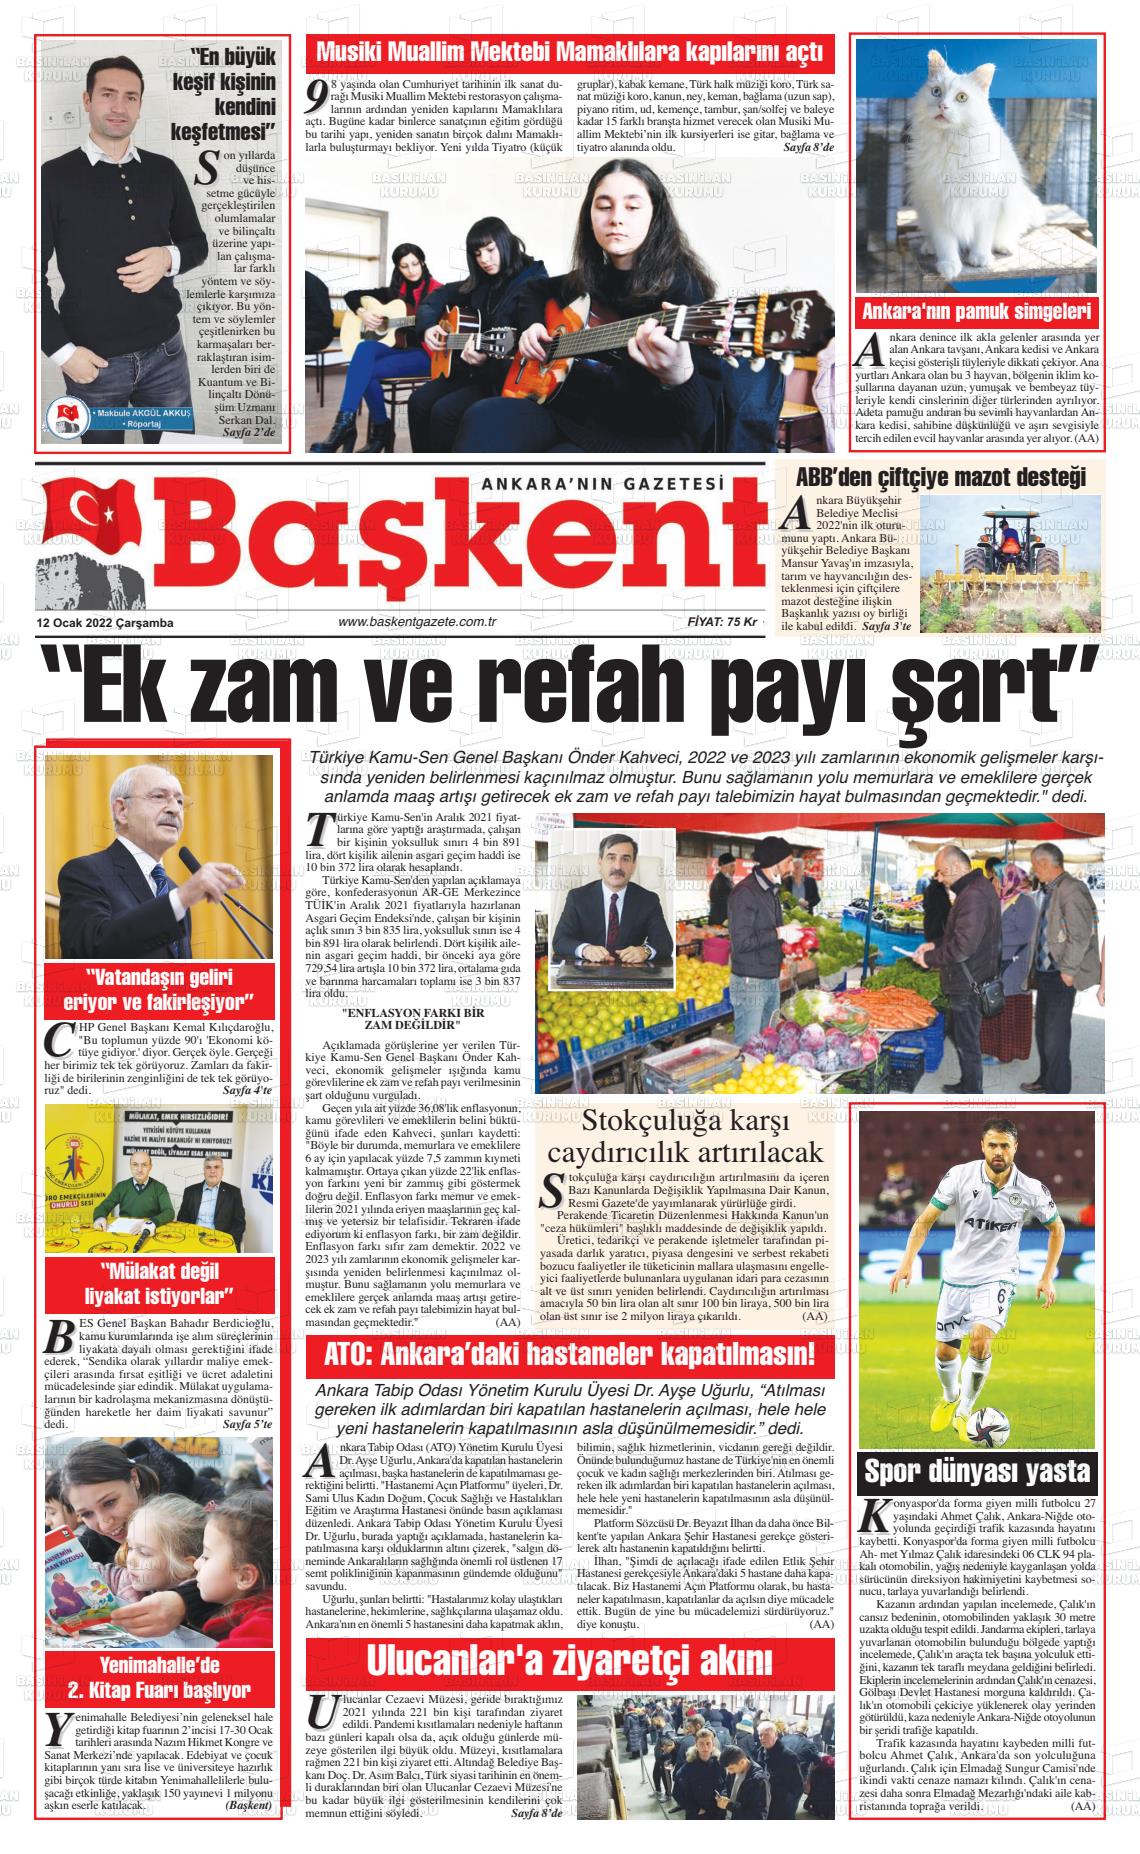 12 Ocak 2022 Ankara Başkent Gazete Manşeti